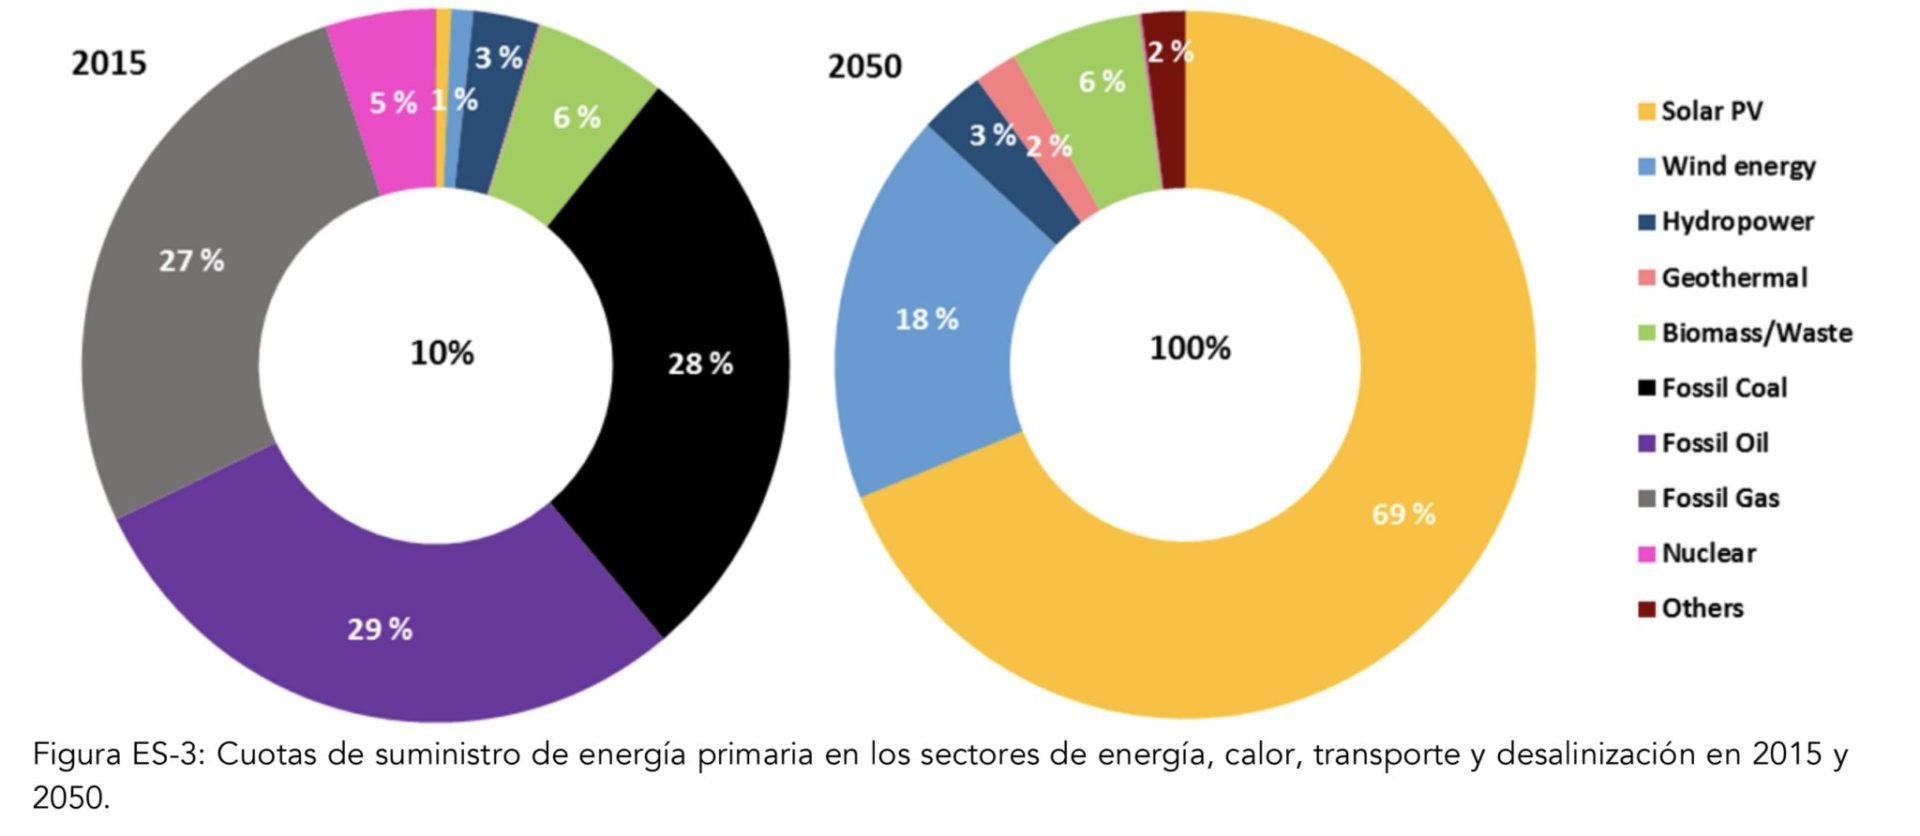 Comparación de cuotas energéticas 2015 - 2050